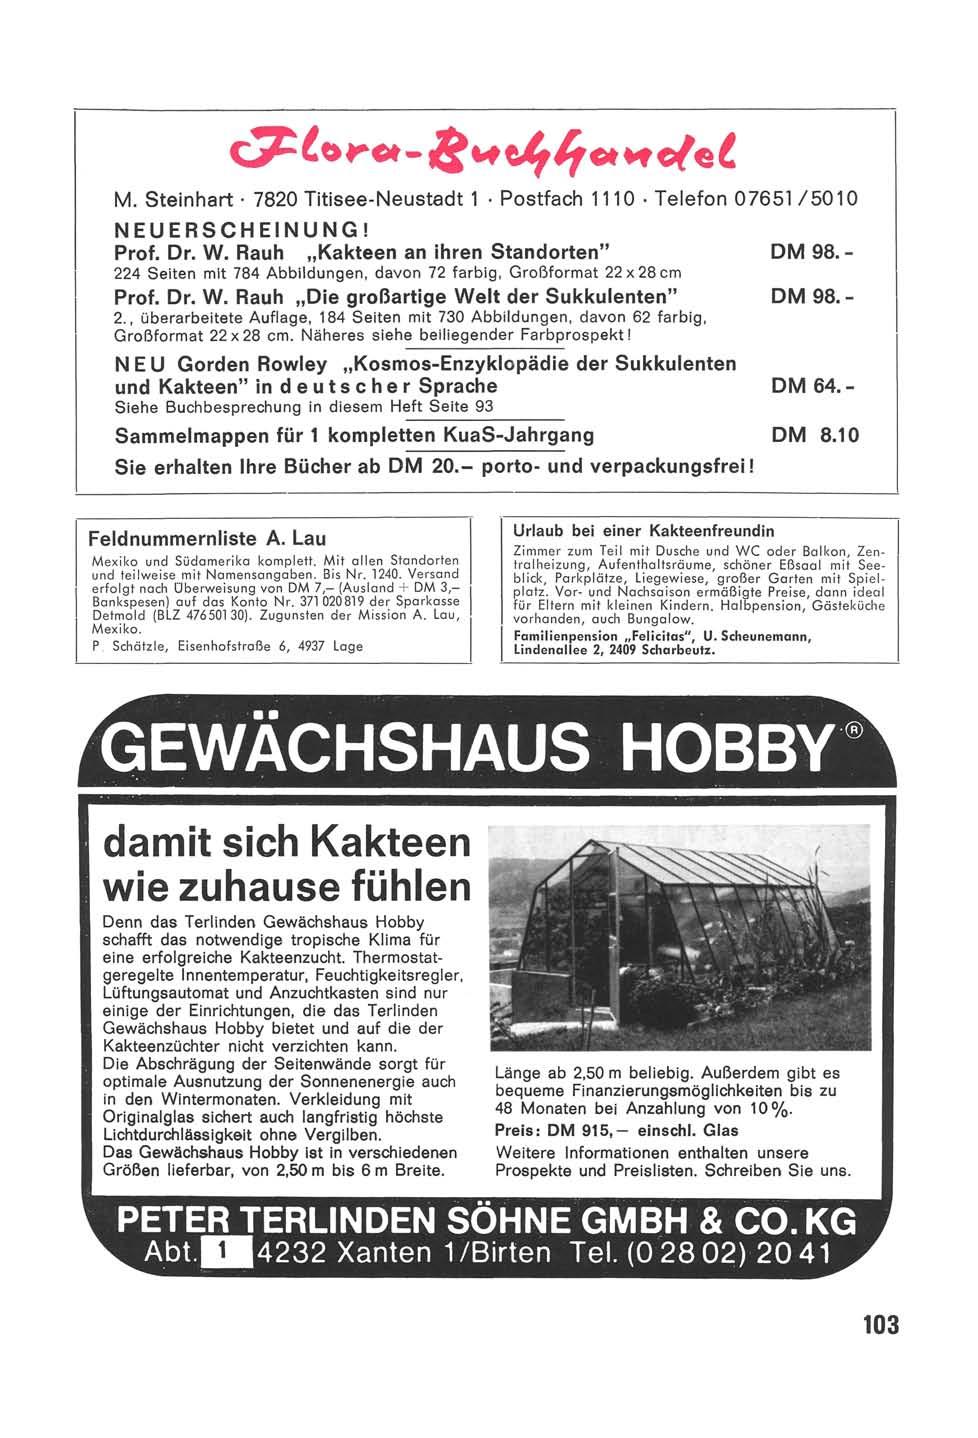 Flora-Buchhandel M. Steinhart 7820 Titisee-Neustadt 1 Postfach 1110 Telefon 07651/5010 NEUERSCHEINUNG! Prof. Dr. W. Rauh Kakteen an ihren Standorten" DM 98.